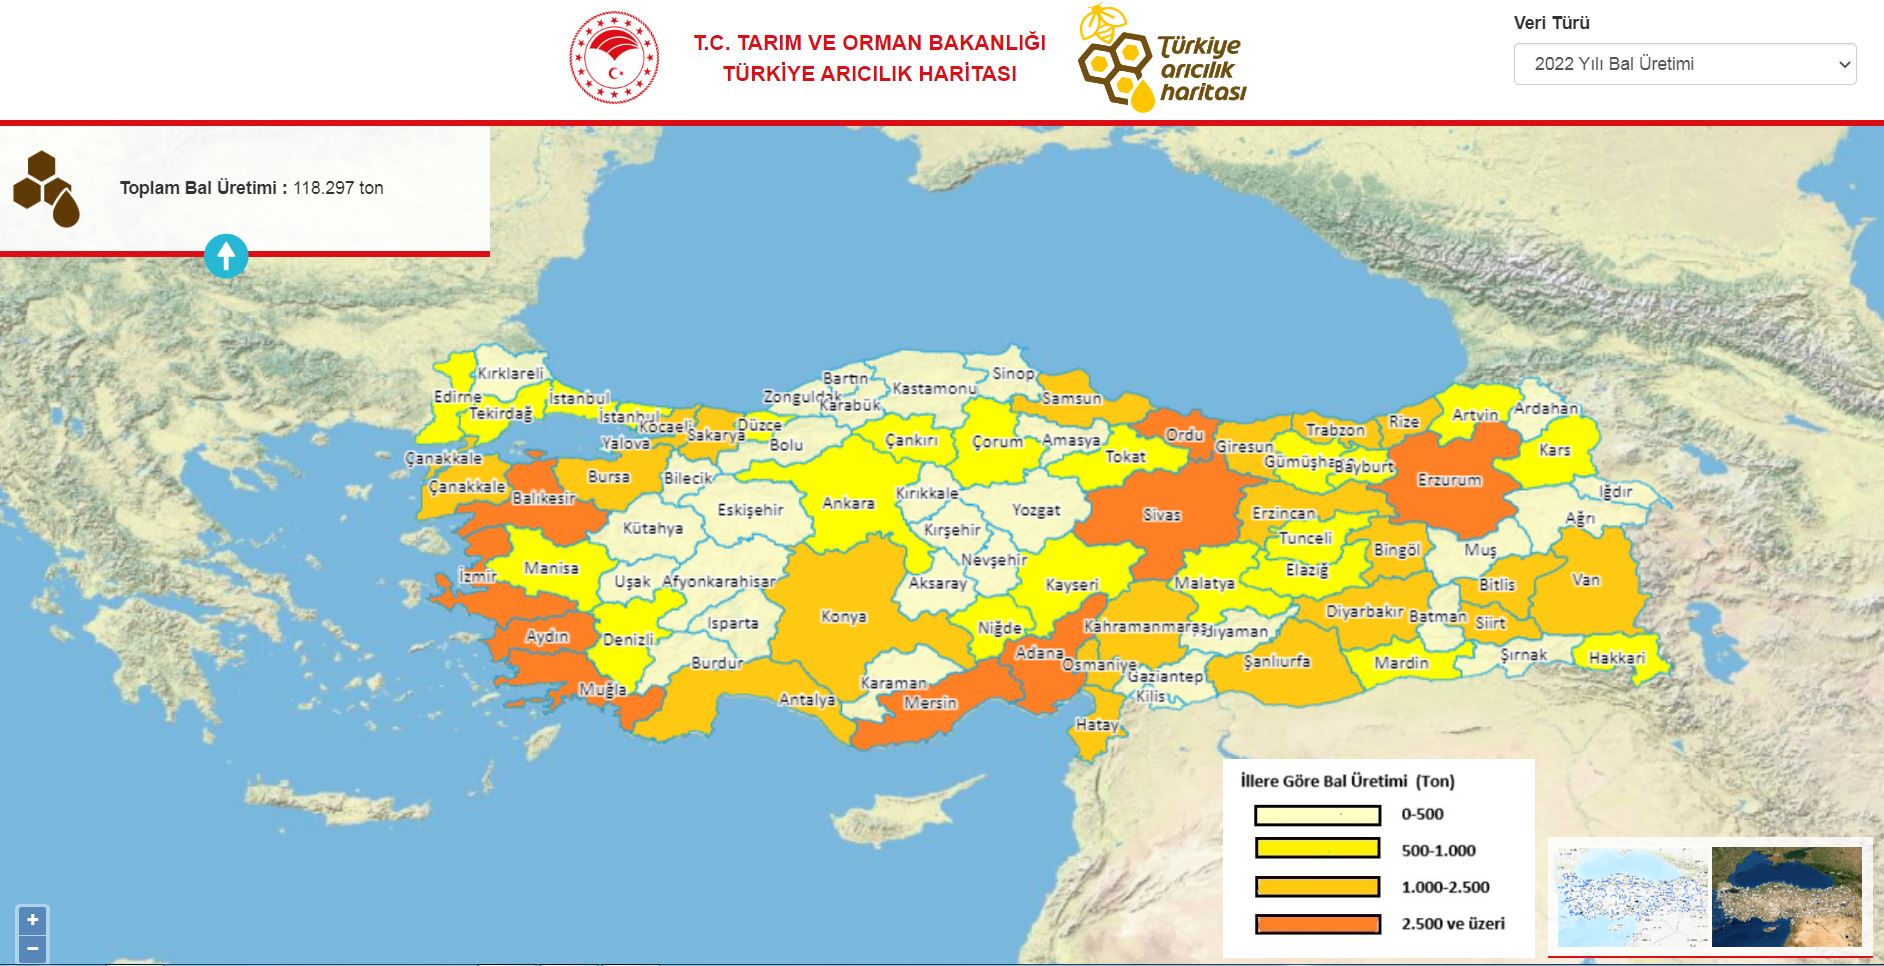 turkiye-aricilik-haritasi-guncellendi-9279-dhaphoto1.jpg